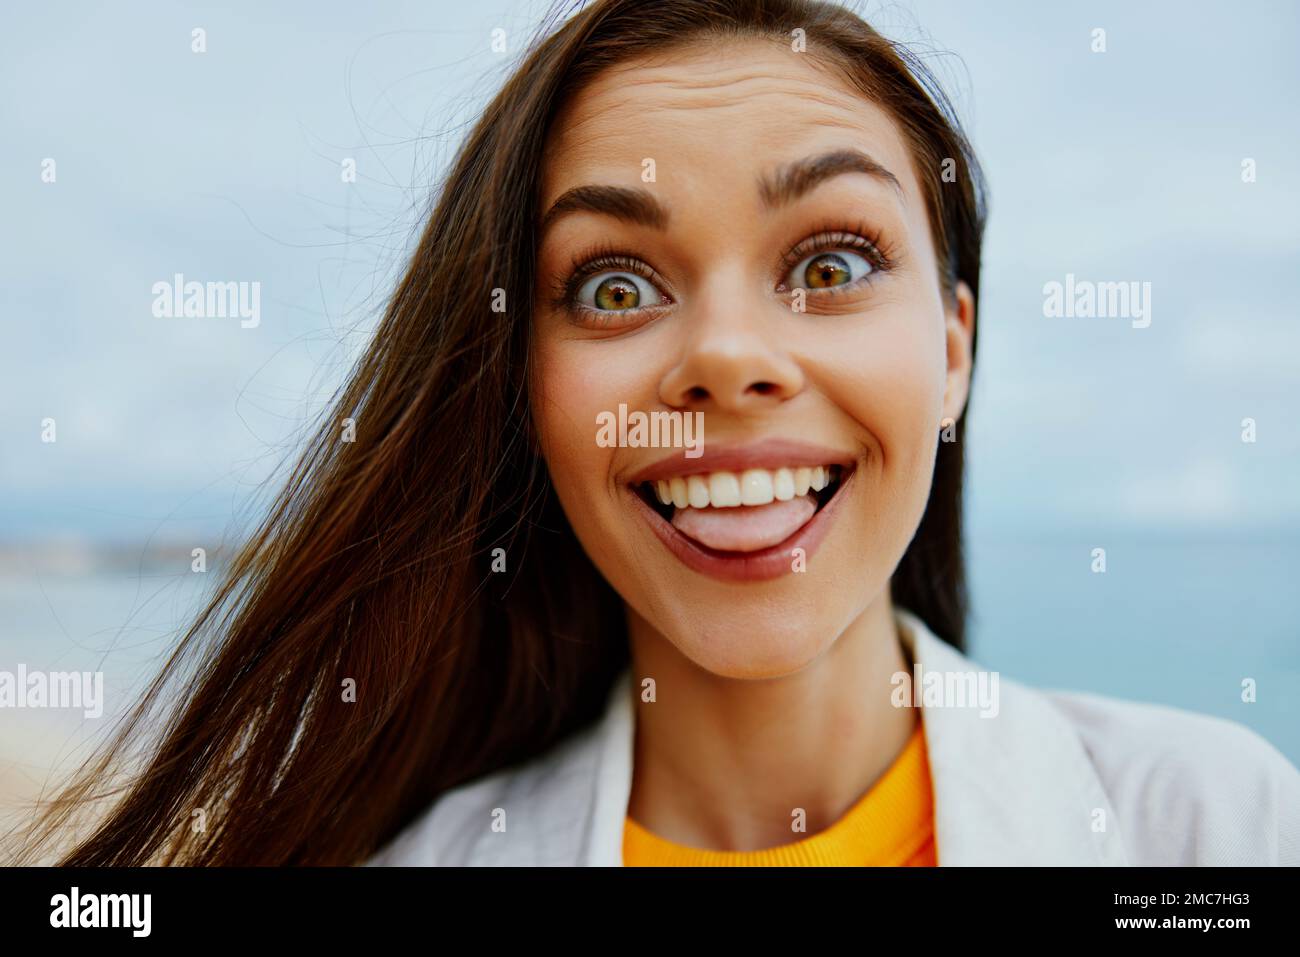 Portrait d'une femme heureuse sourire avec des dents à cheveux longs brunette voyage d'été et sensation de liberté, équilibre Banque D'Images